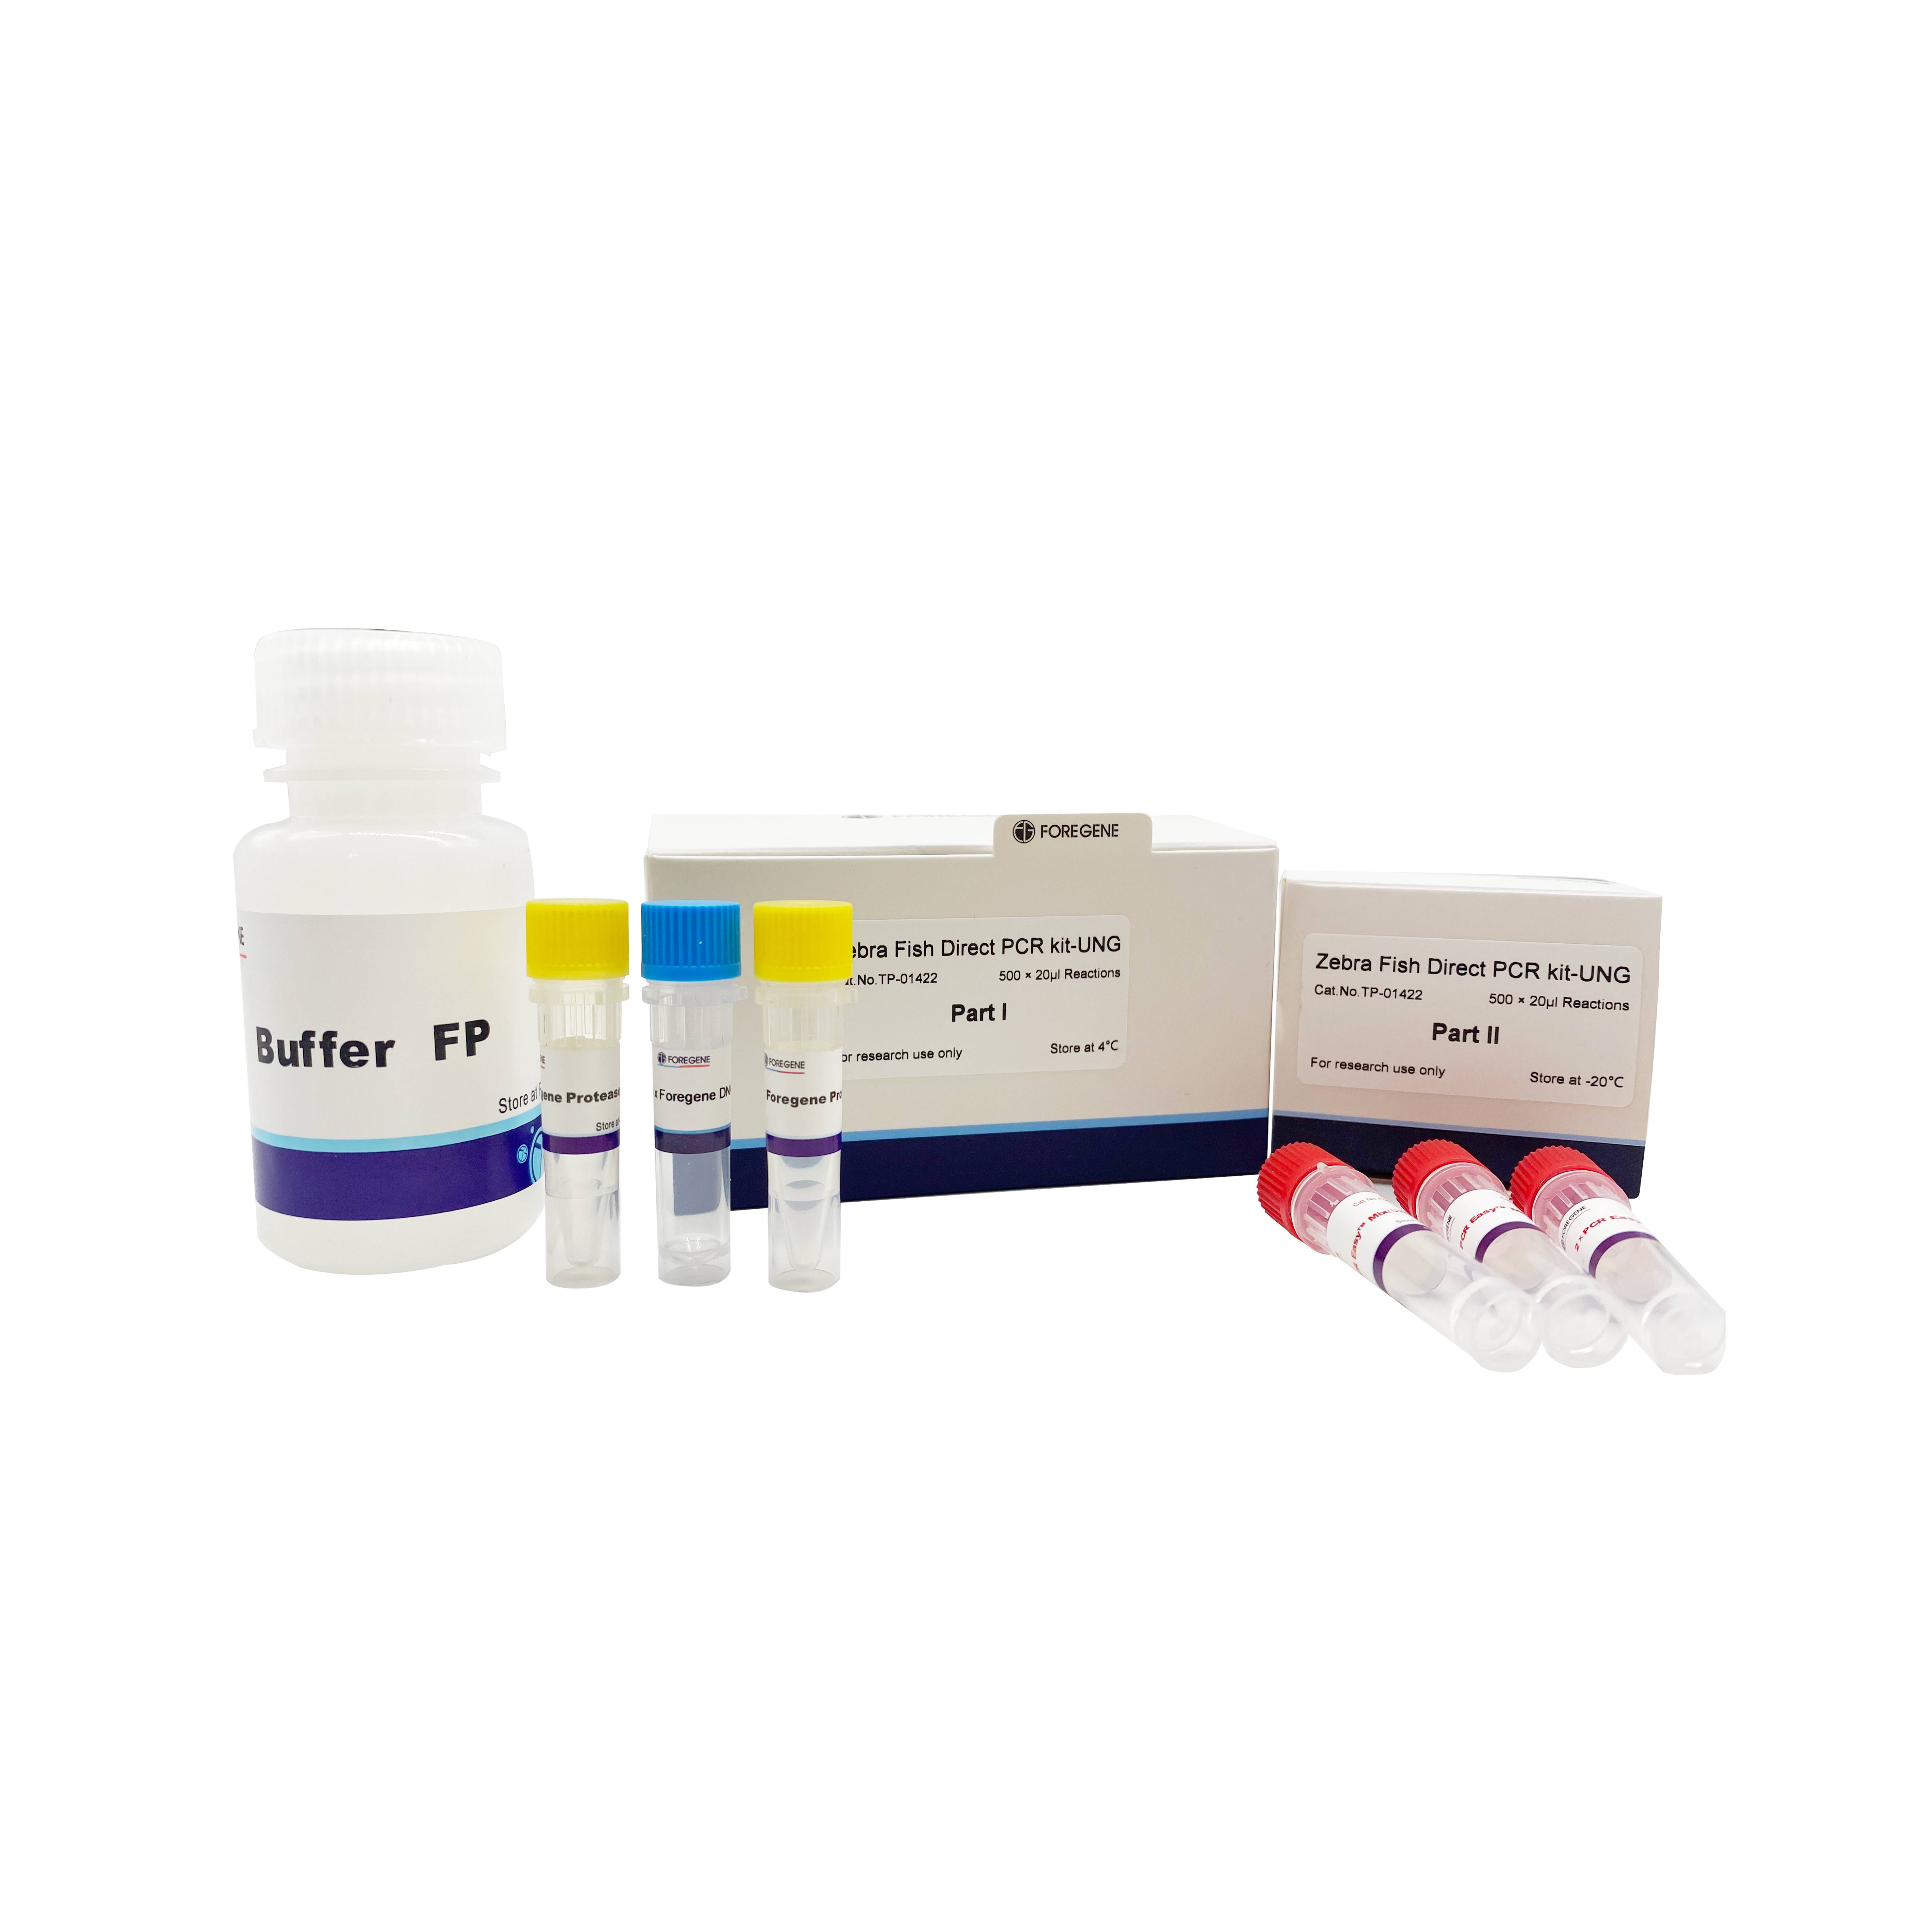 Zebra Fish Direct PCR Kit-UNG Direct PCR Lysis Reagent (zebrofiŝo)